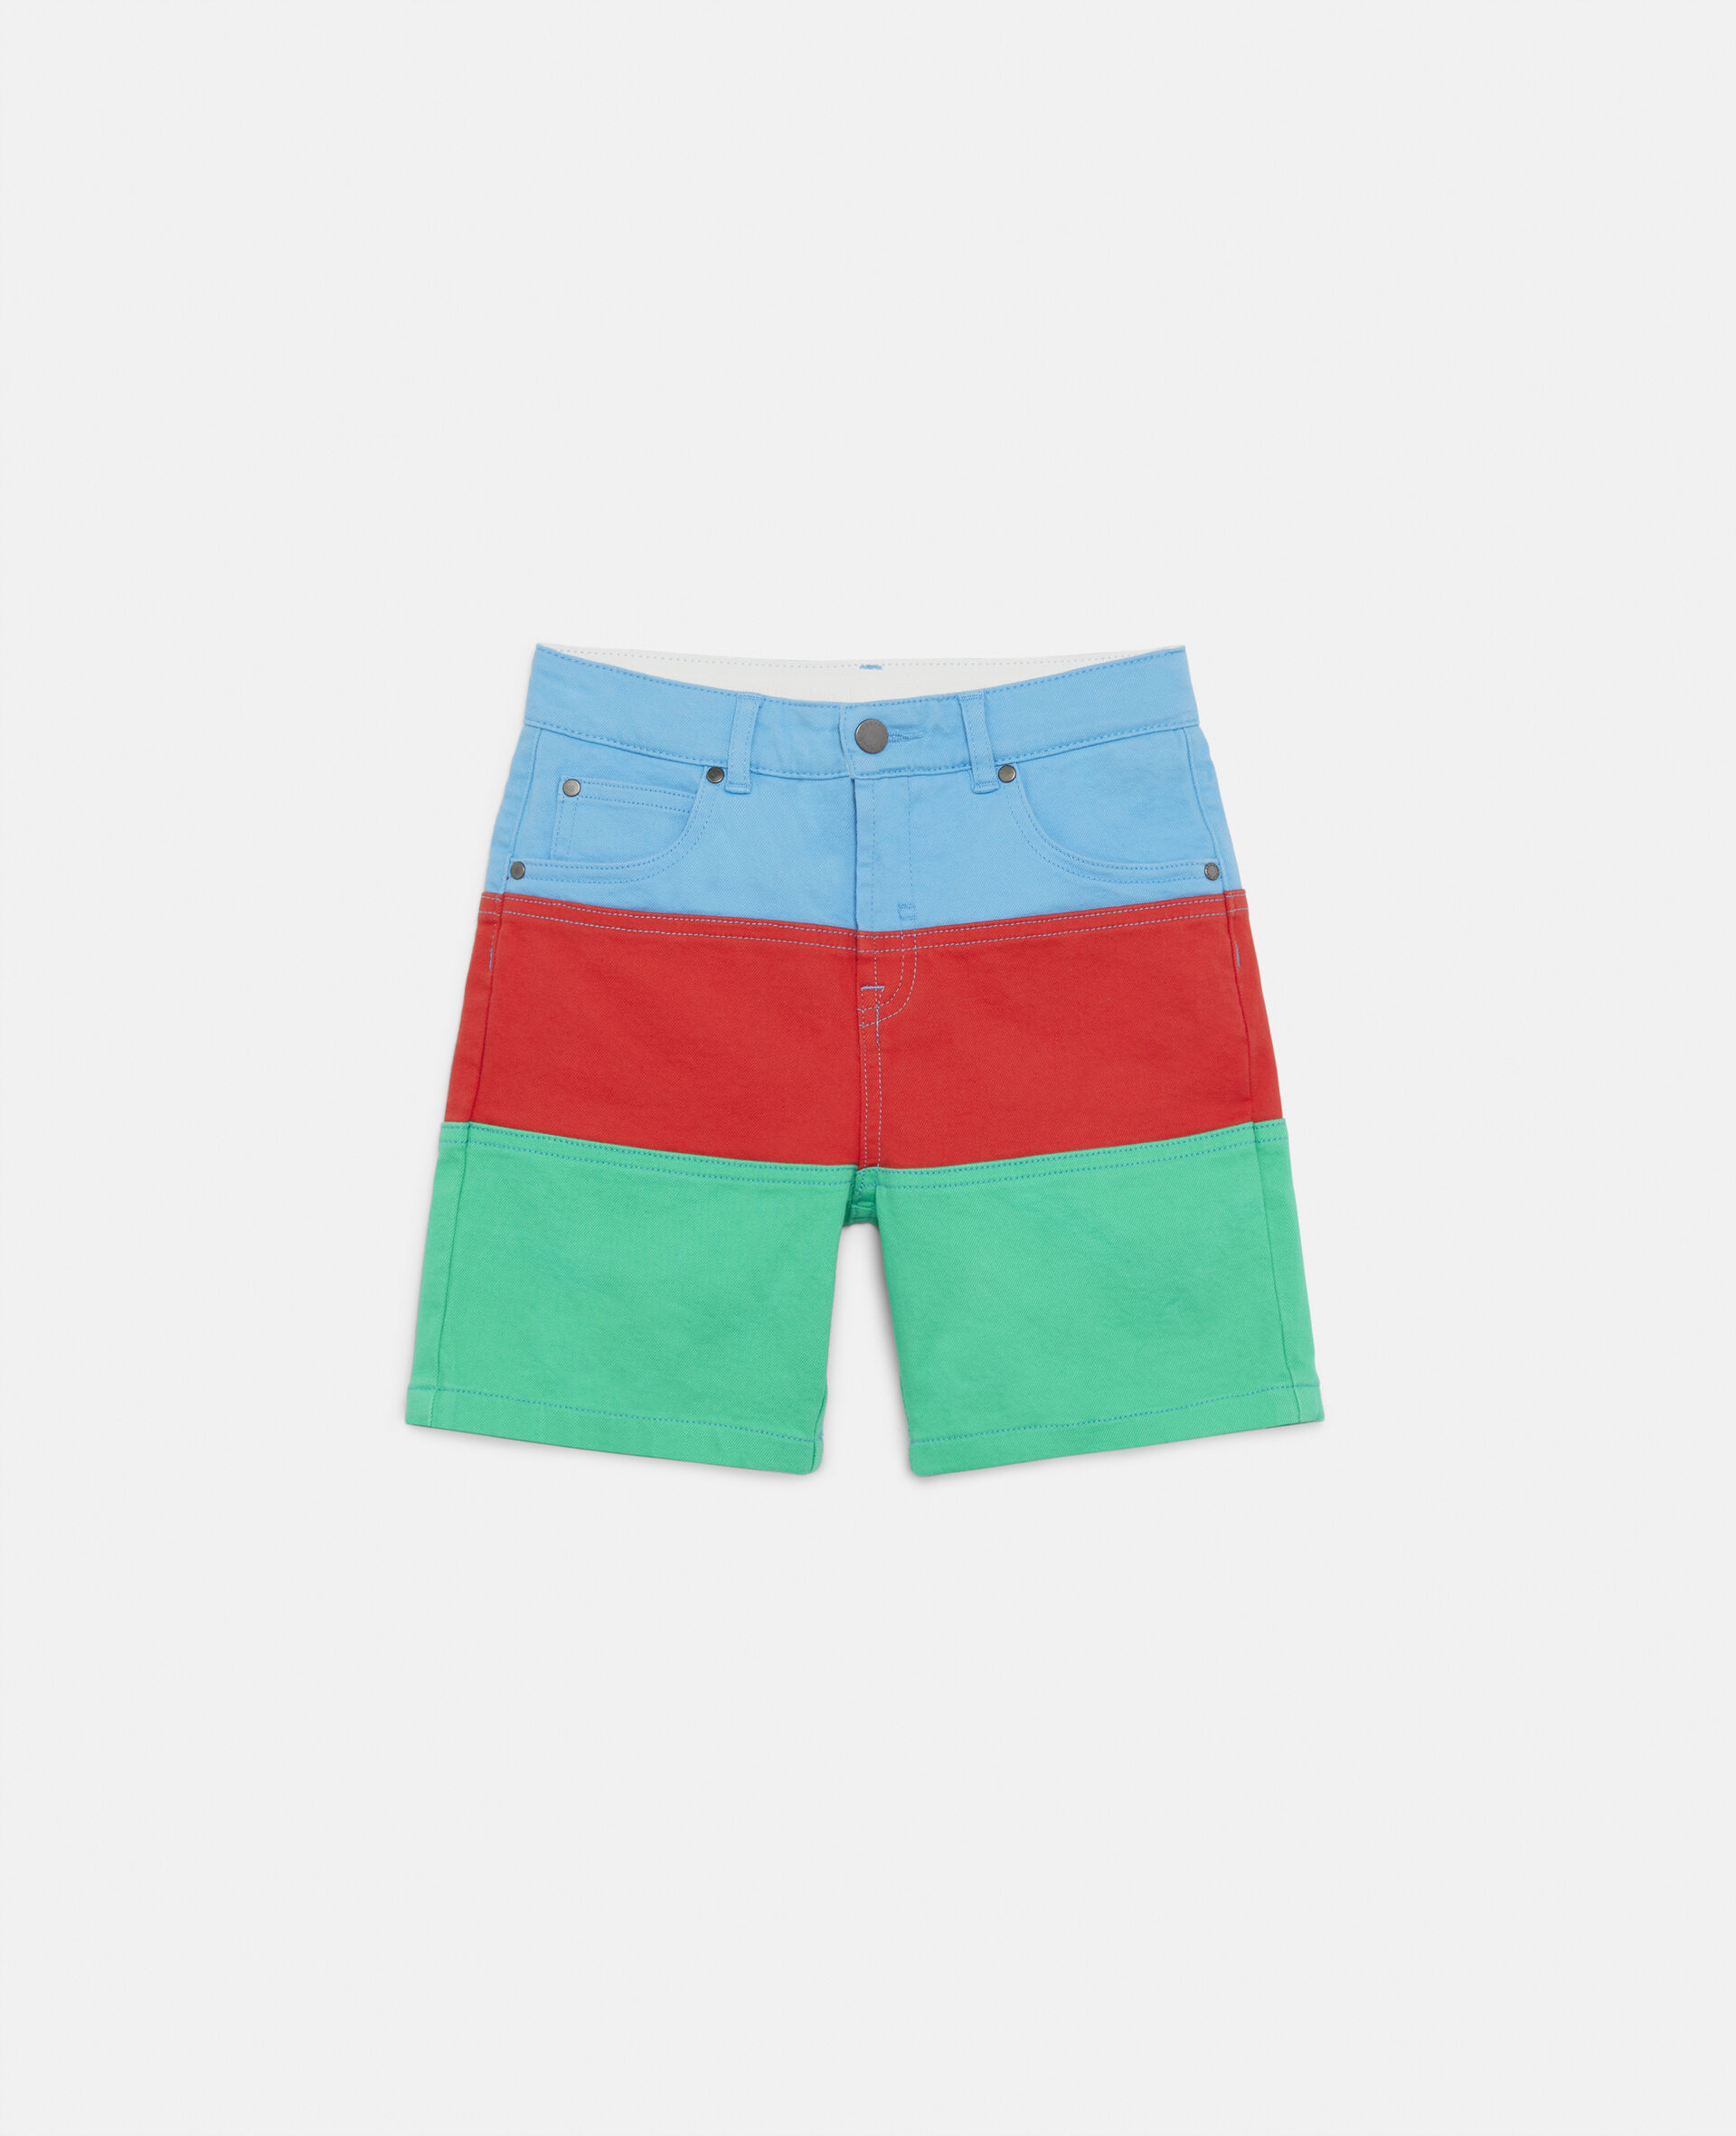 Colour Block Denim Shorts -Multicolour-large